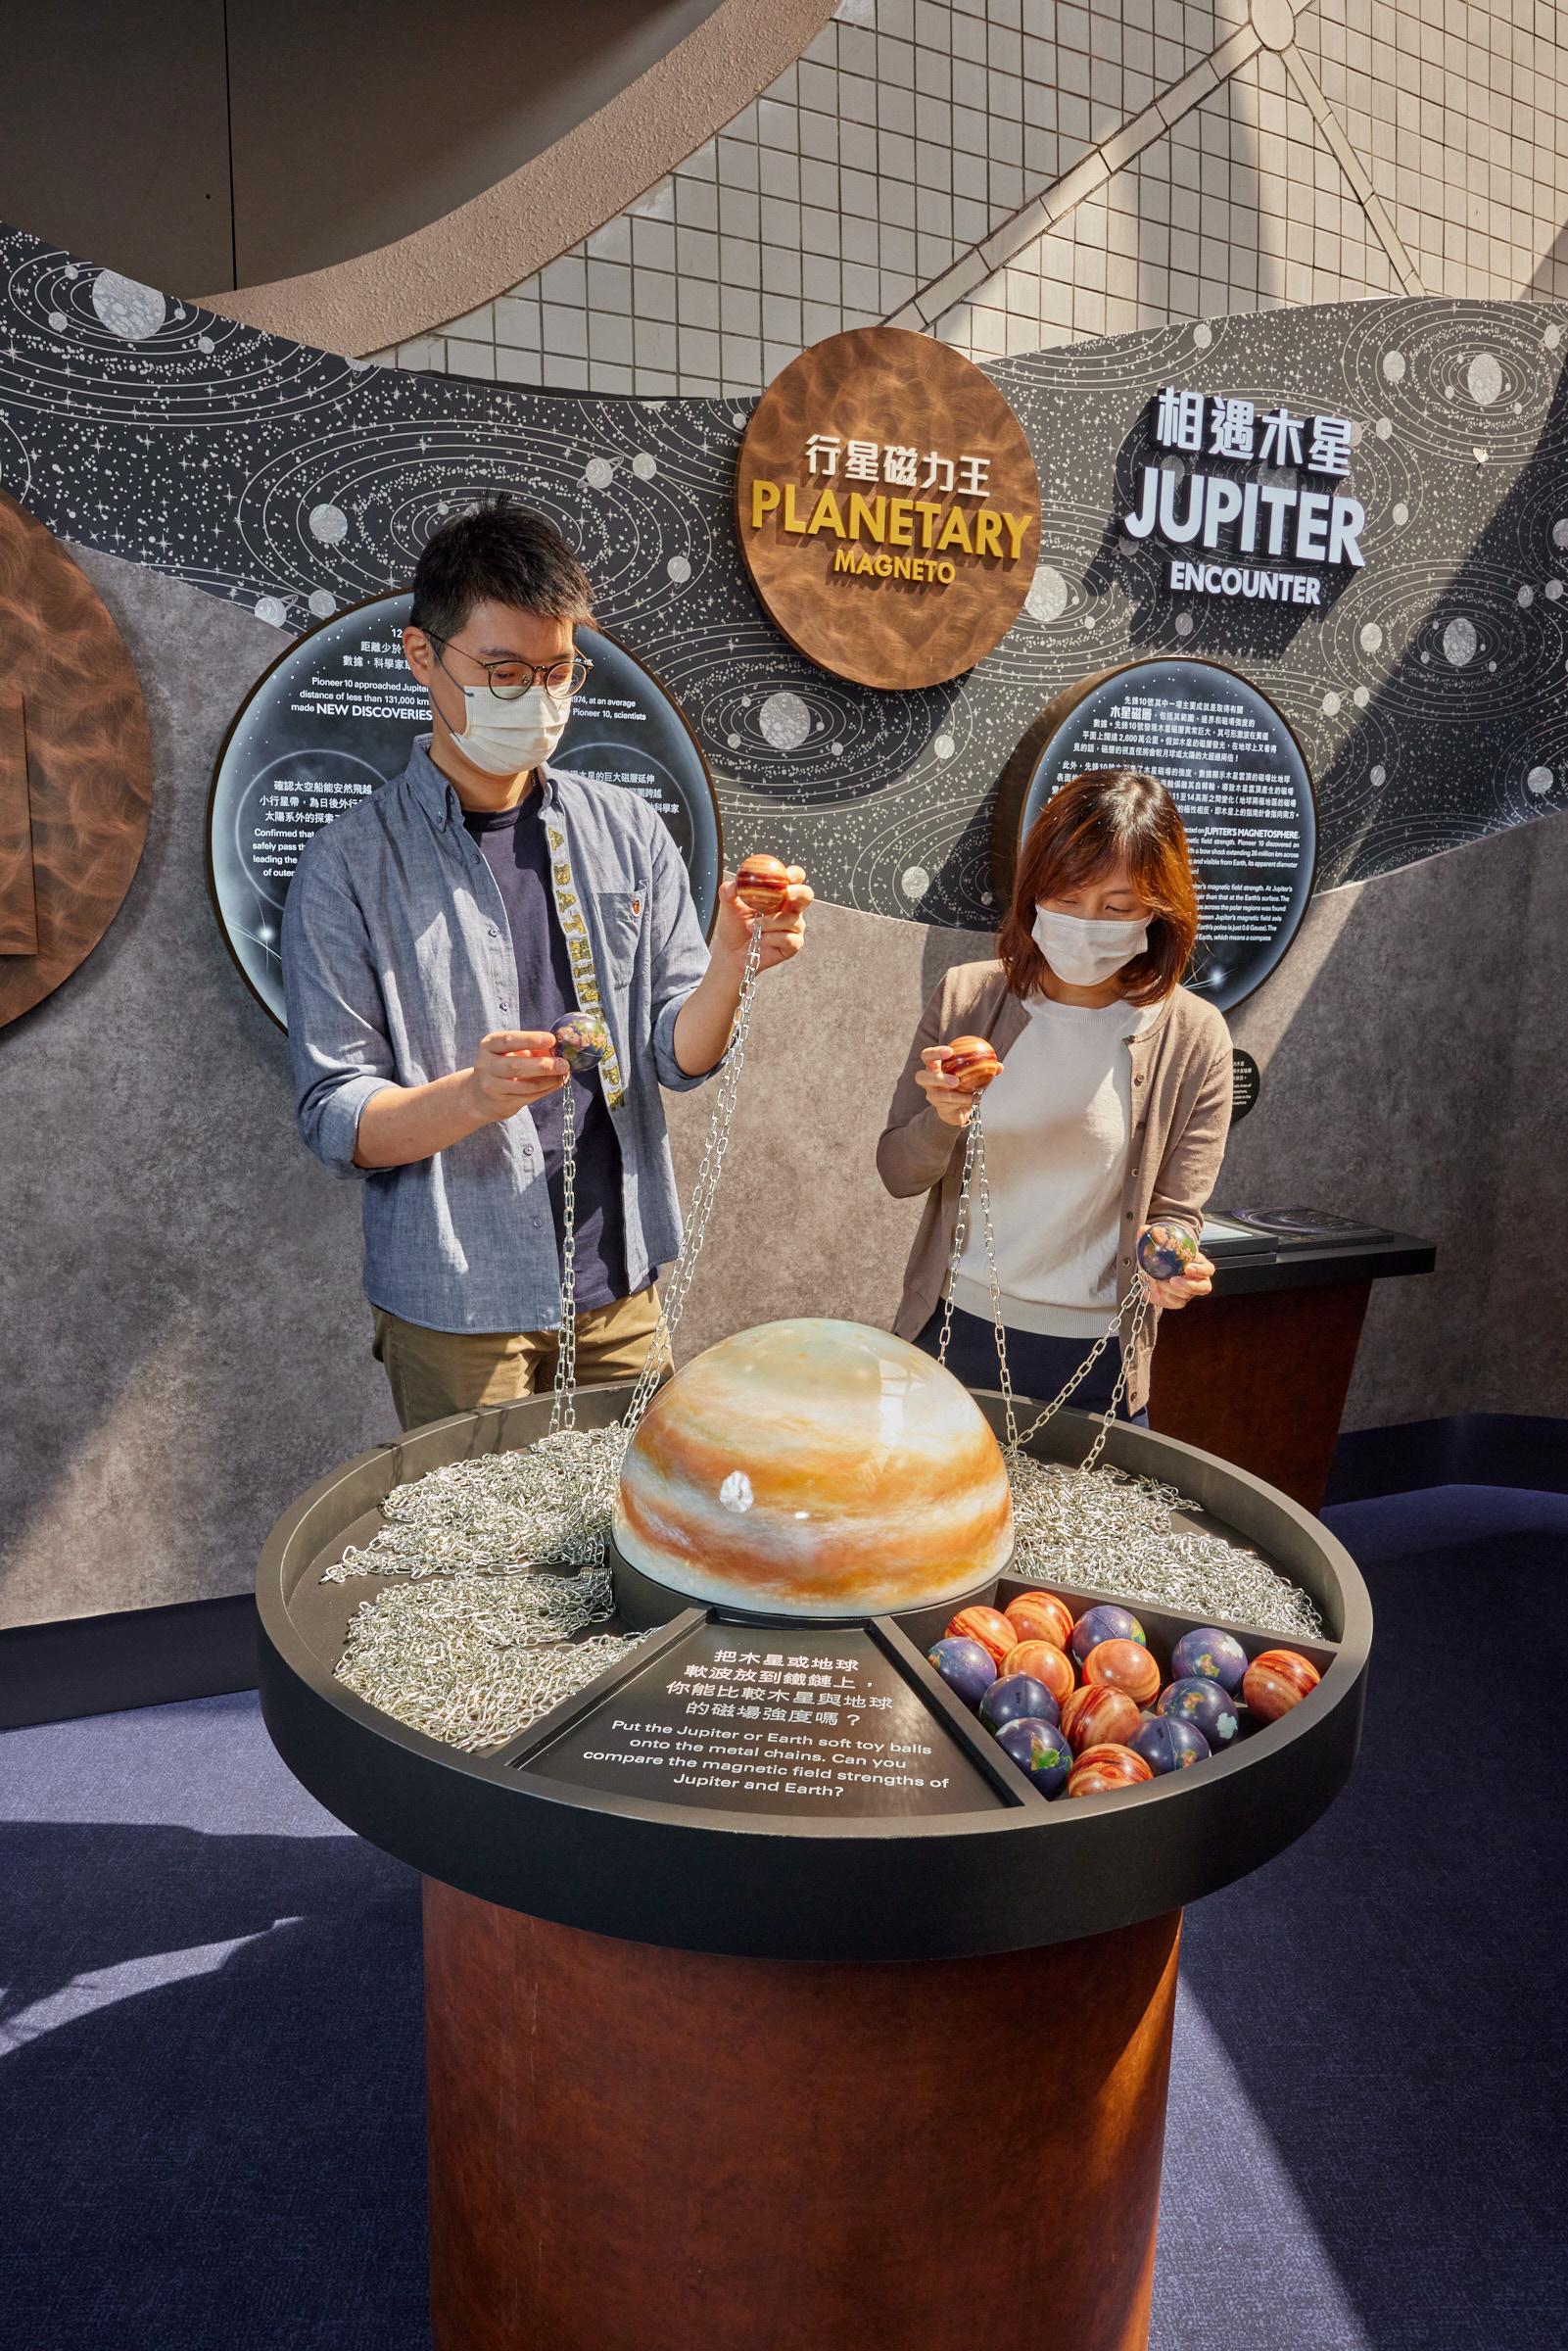 香港太空馆明日（十月二十六日）推出全新专题展览「先锋号星际之旅」。图示展览介绍木星和地球的磁场强度的一个互动展品。